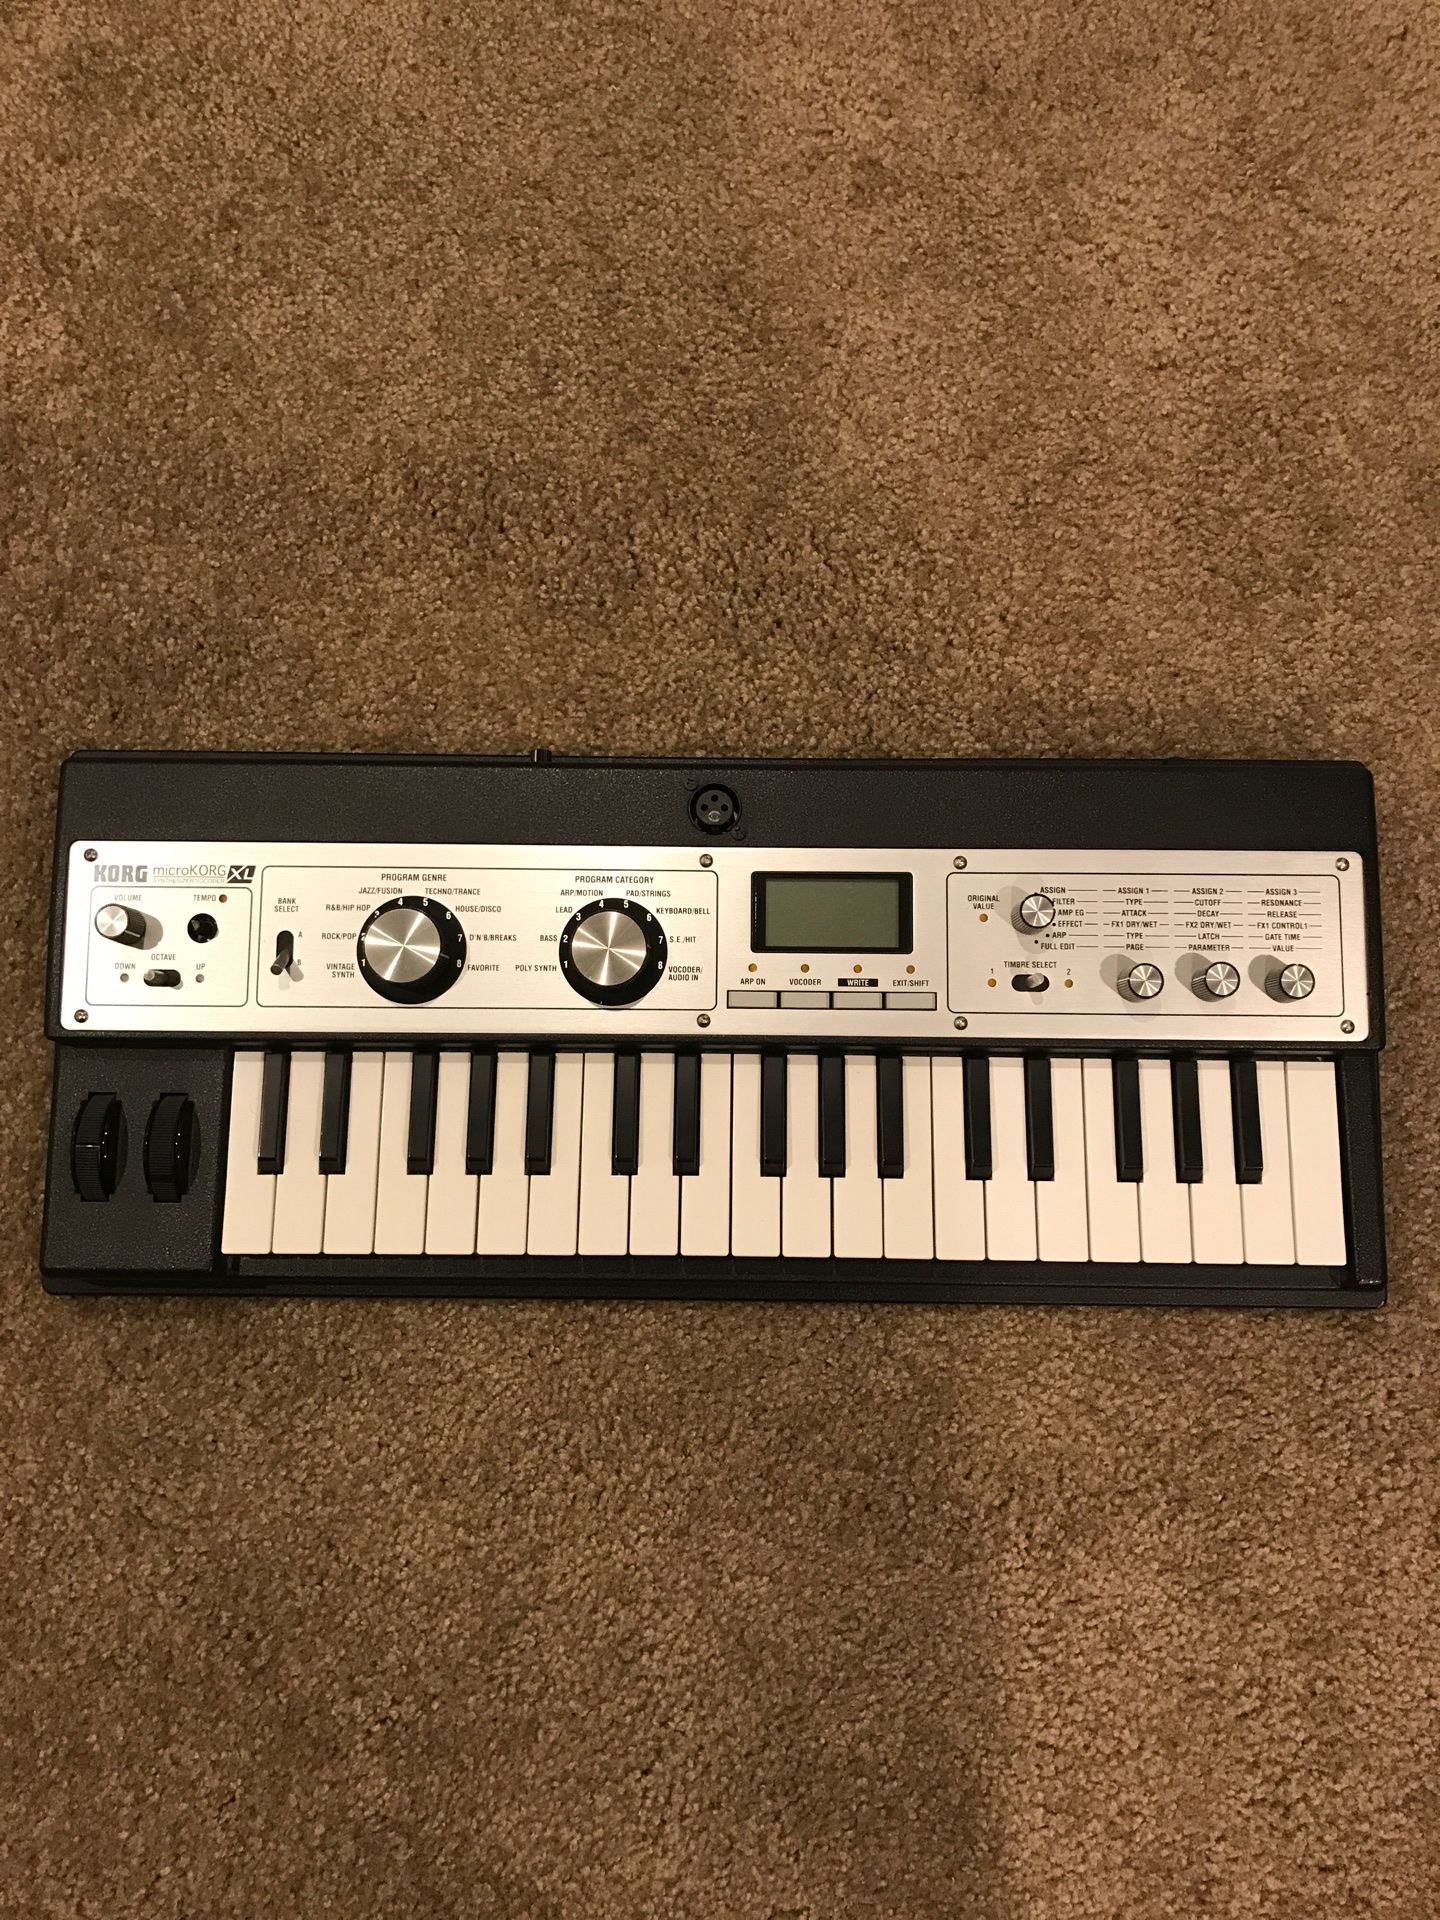 Korg MicroKorg XL synthesizer